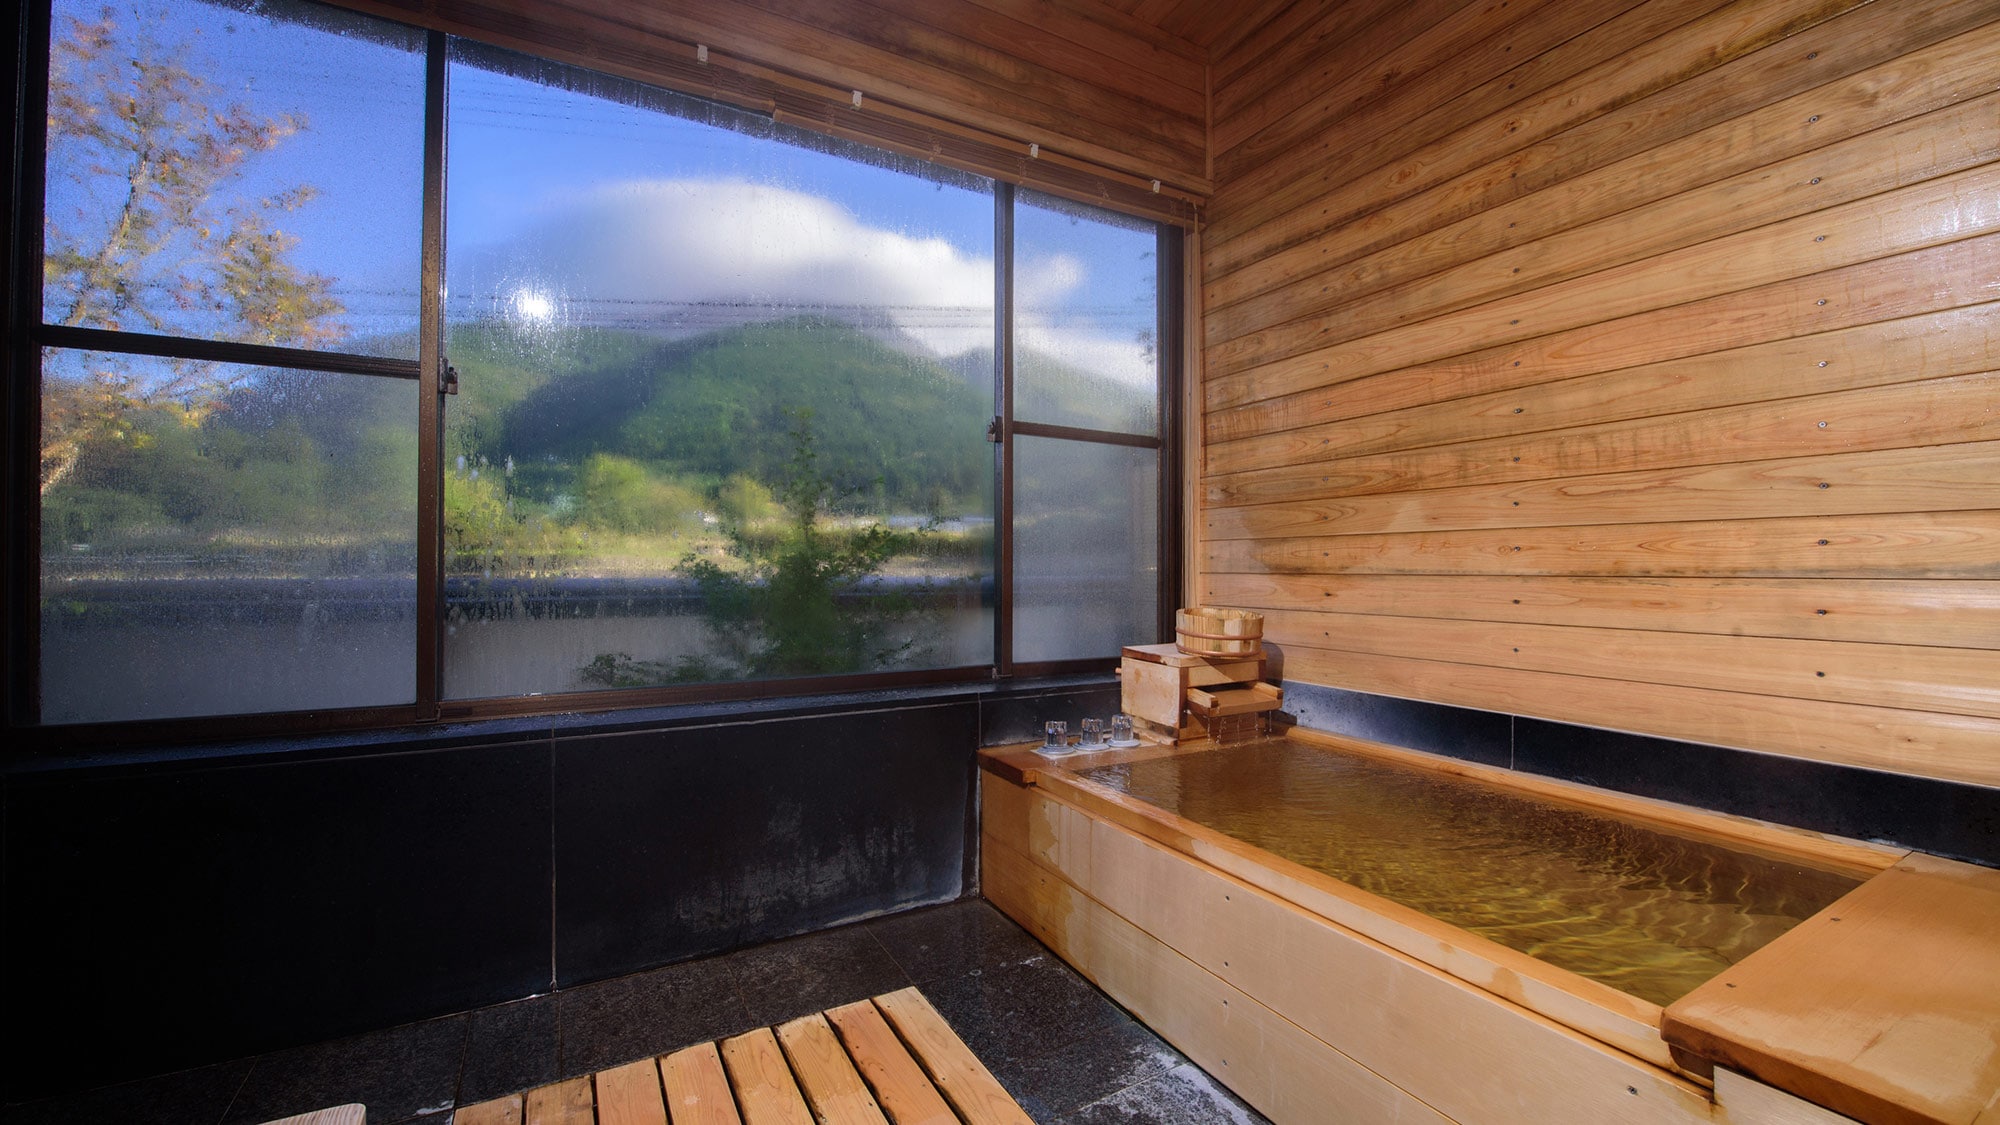 [Agano] A cypress bath with a cypress bath